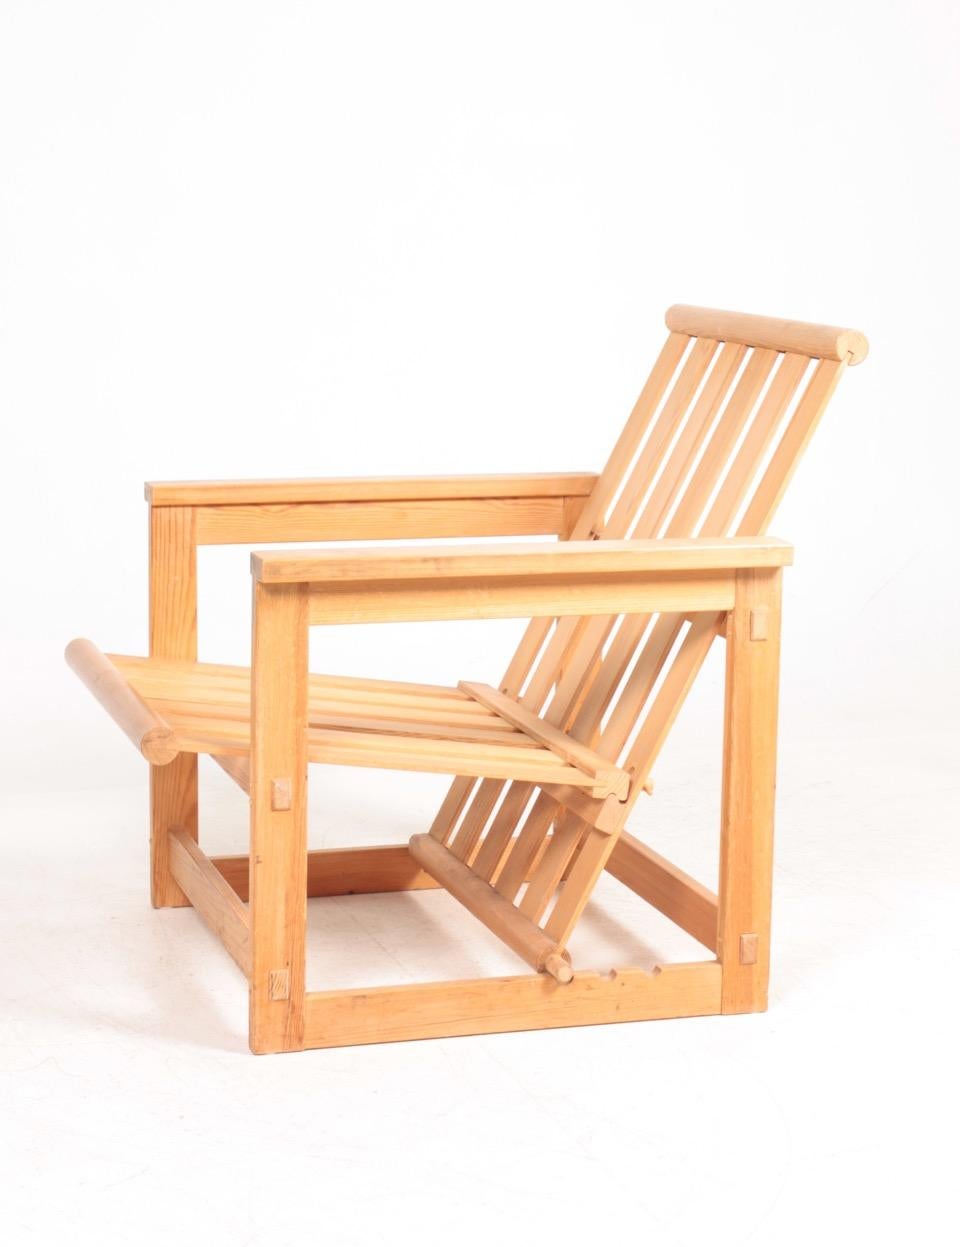 Chaise longue en pin massif conçue par Edvin Helseth pour Trybo furniture. Fabriqué en Norvège. Excellent état d'origine.